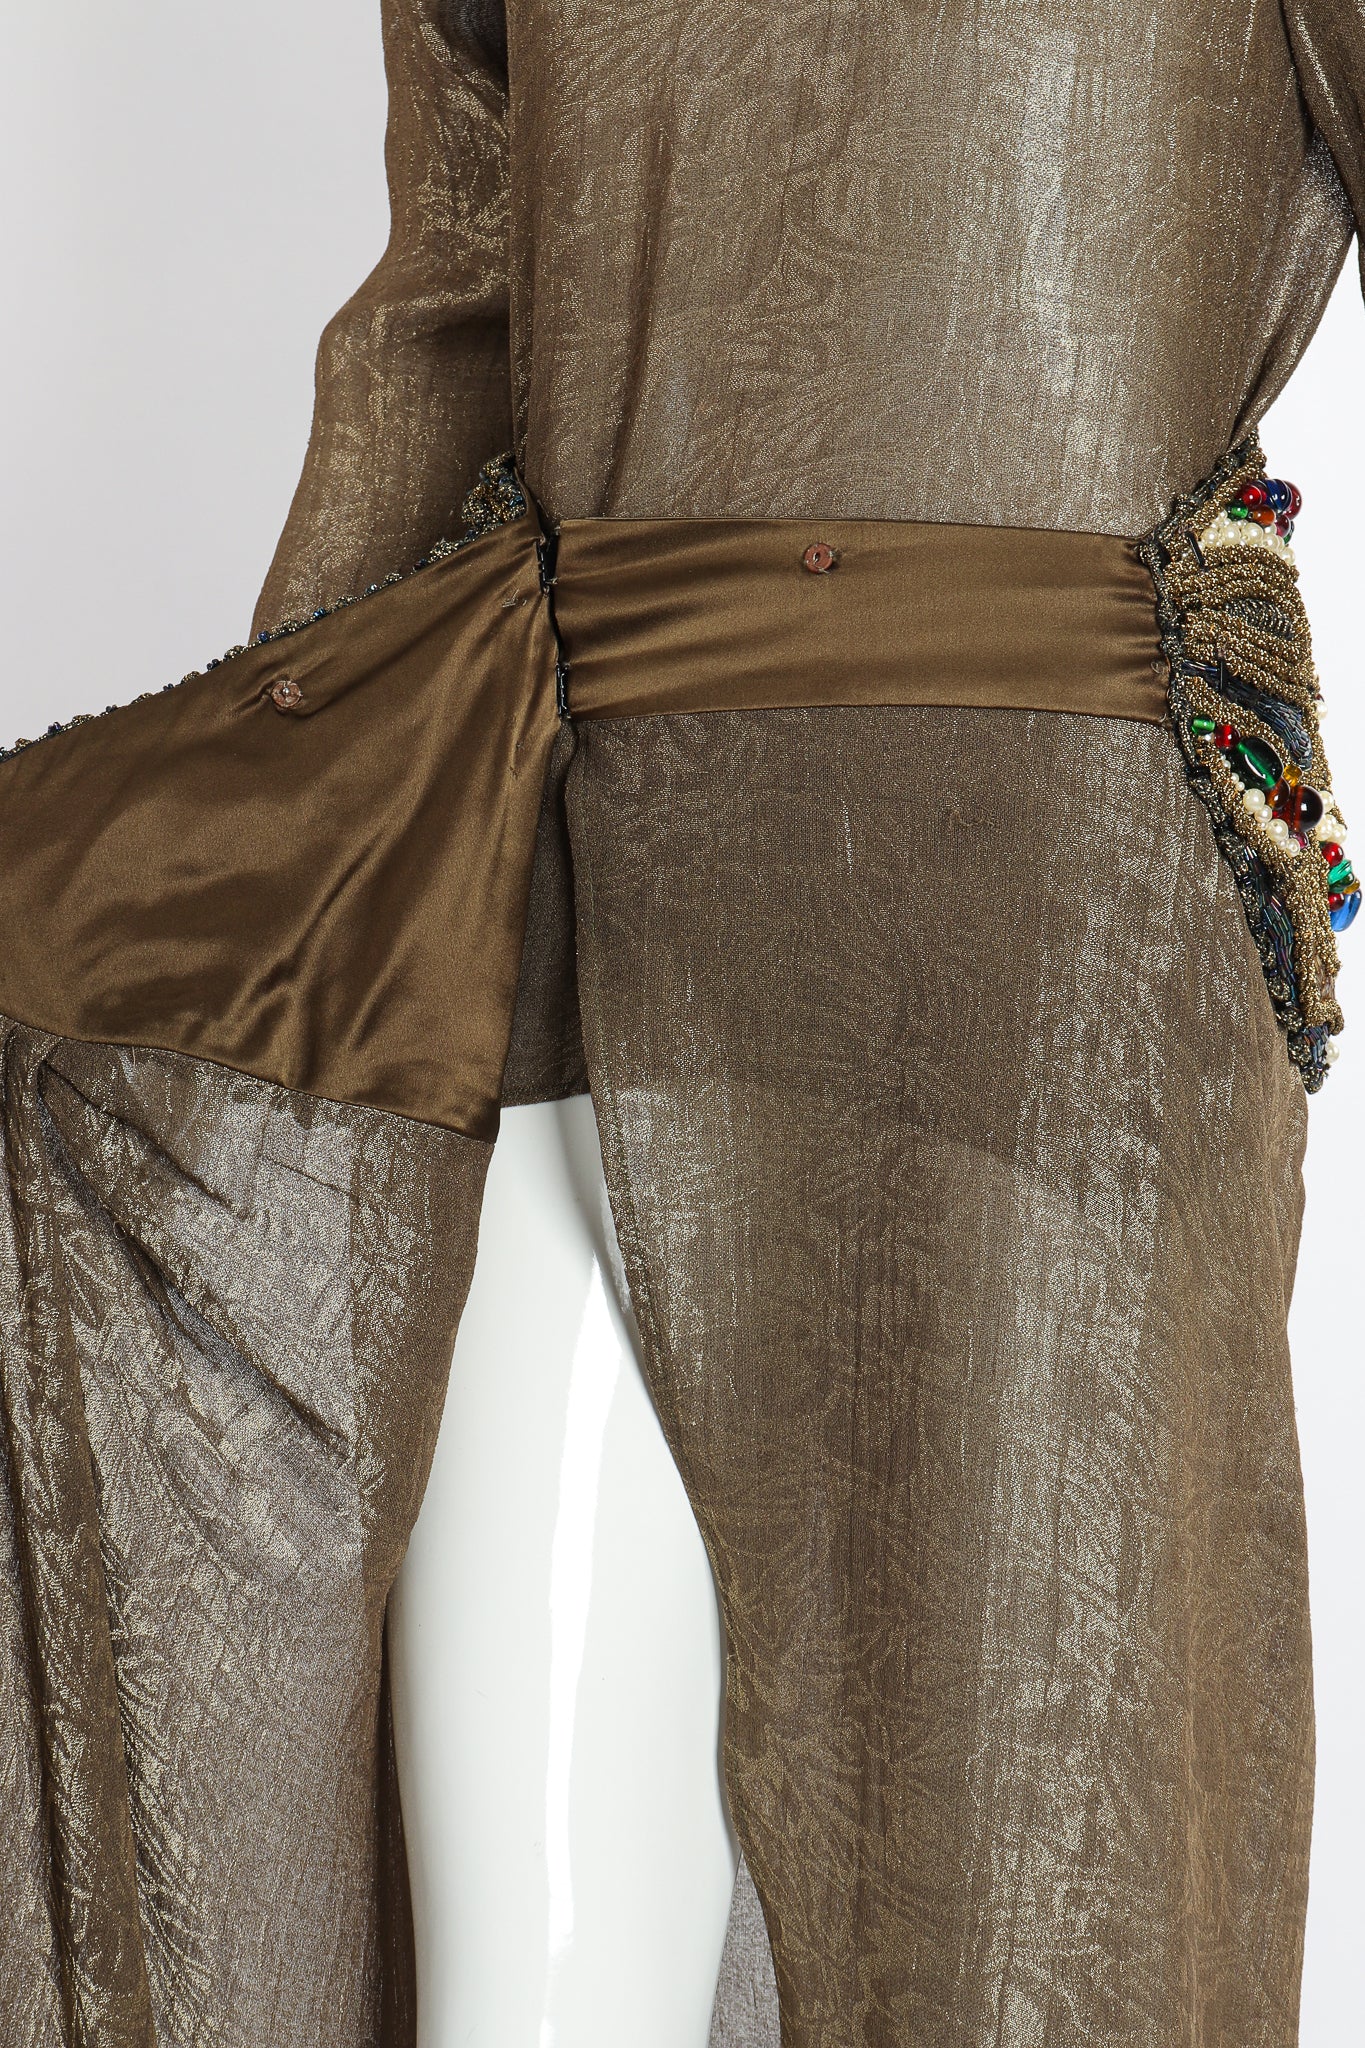 Vintage Oscar de la Renta Jeweled Lamé Wrap Skirt on Mannequin wrap detail at Recess LA